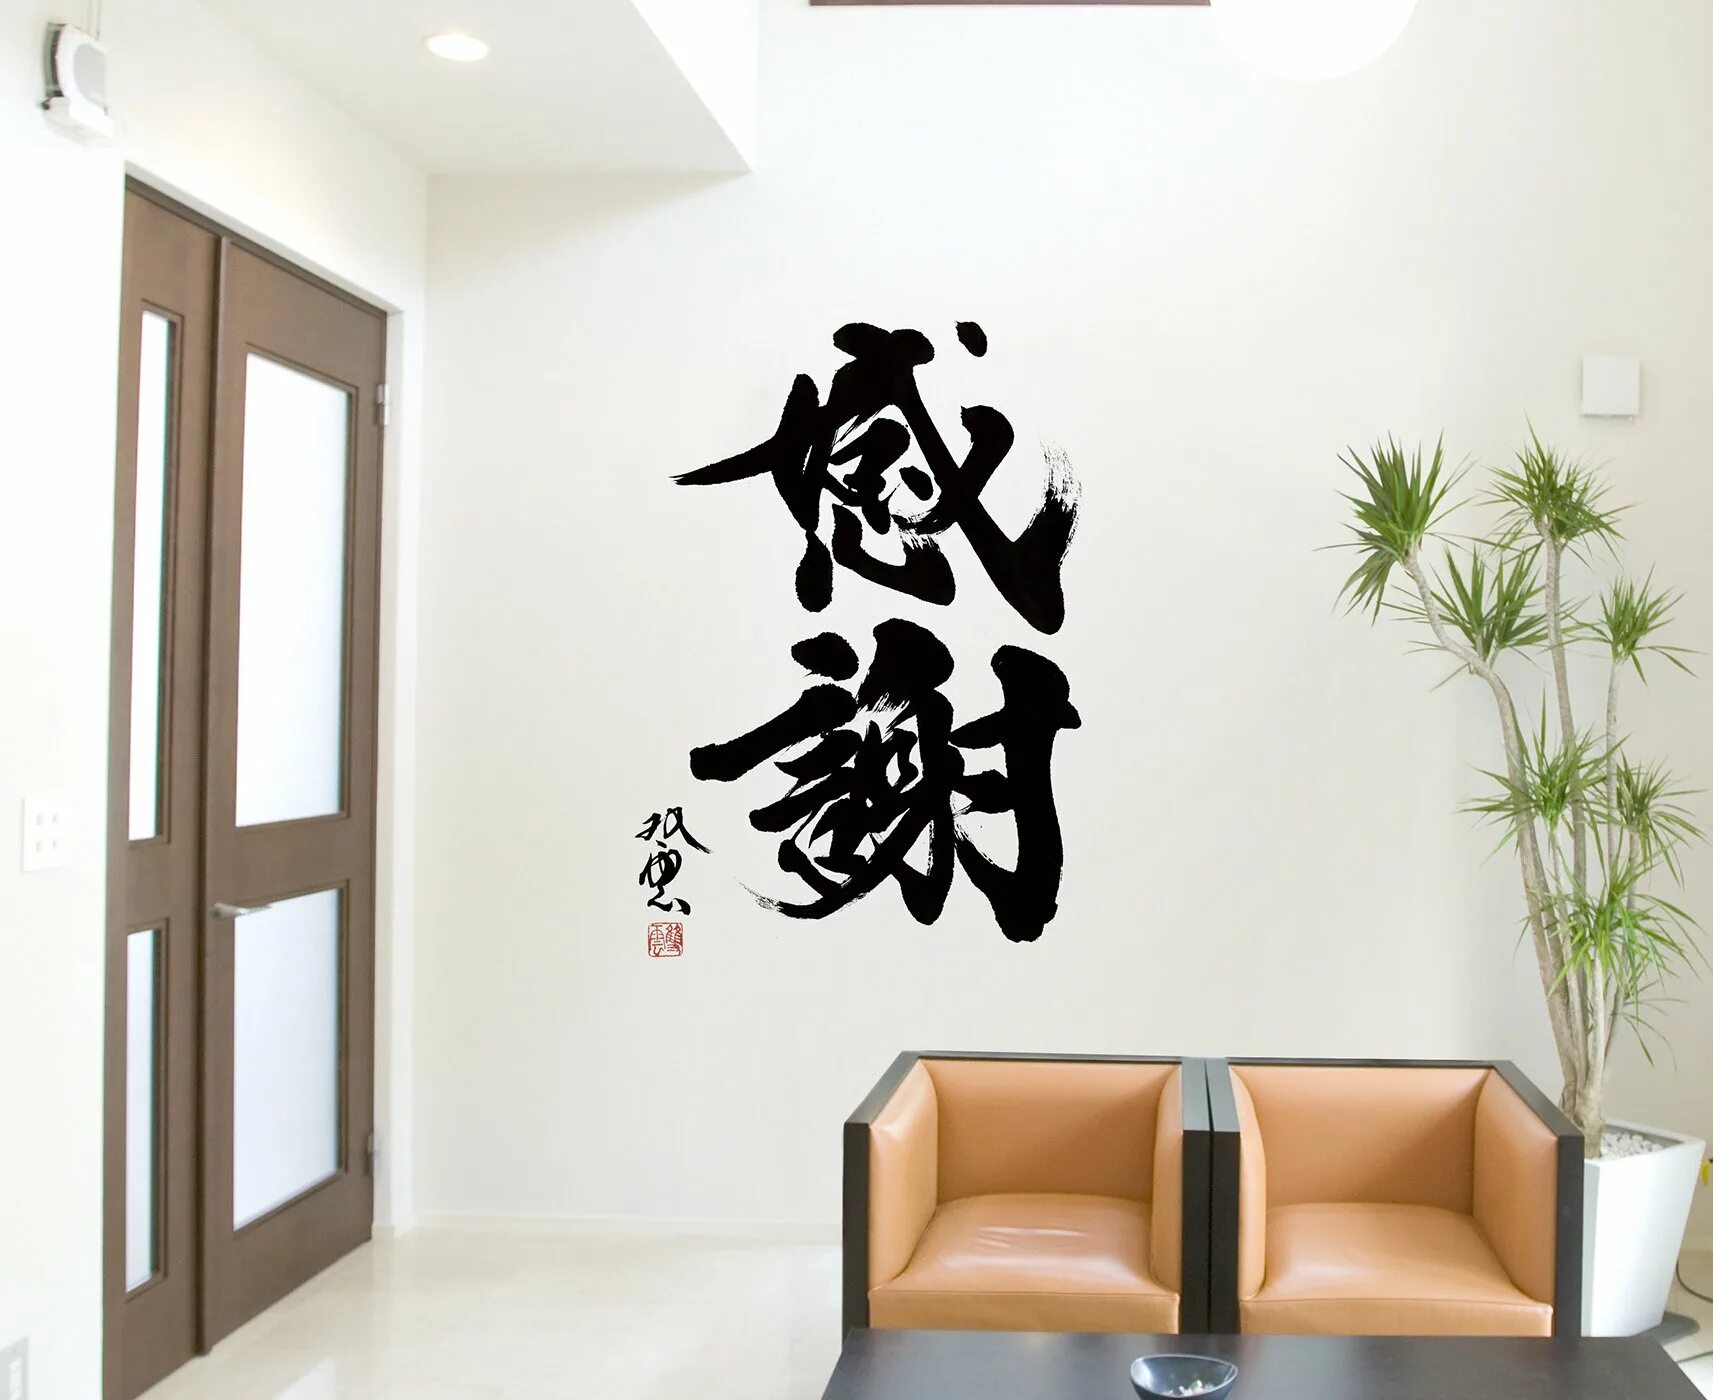 Иероглиф стиль. Наклейки в японском стиле. Роспись стен в японском стиле. Китайские иероглифы в интерьере. Иероглифы на стене.